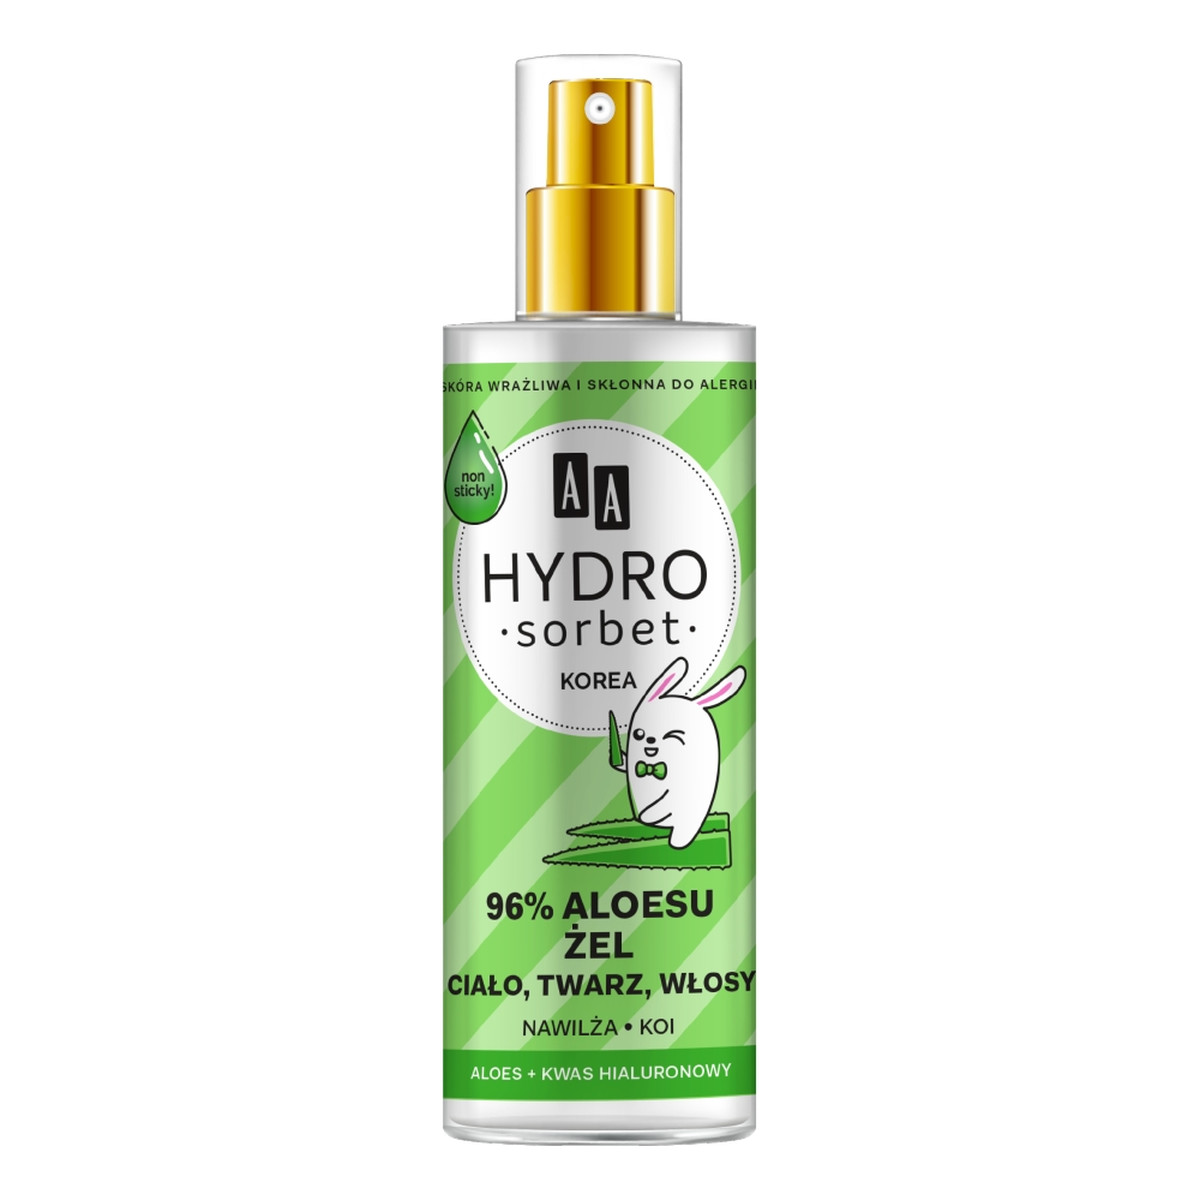 AA Hydro Sorbet Żel do ciała twarzy i włosów w atomizerze 96% aloesu 200ml